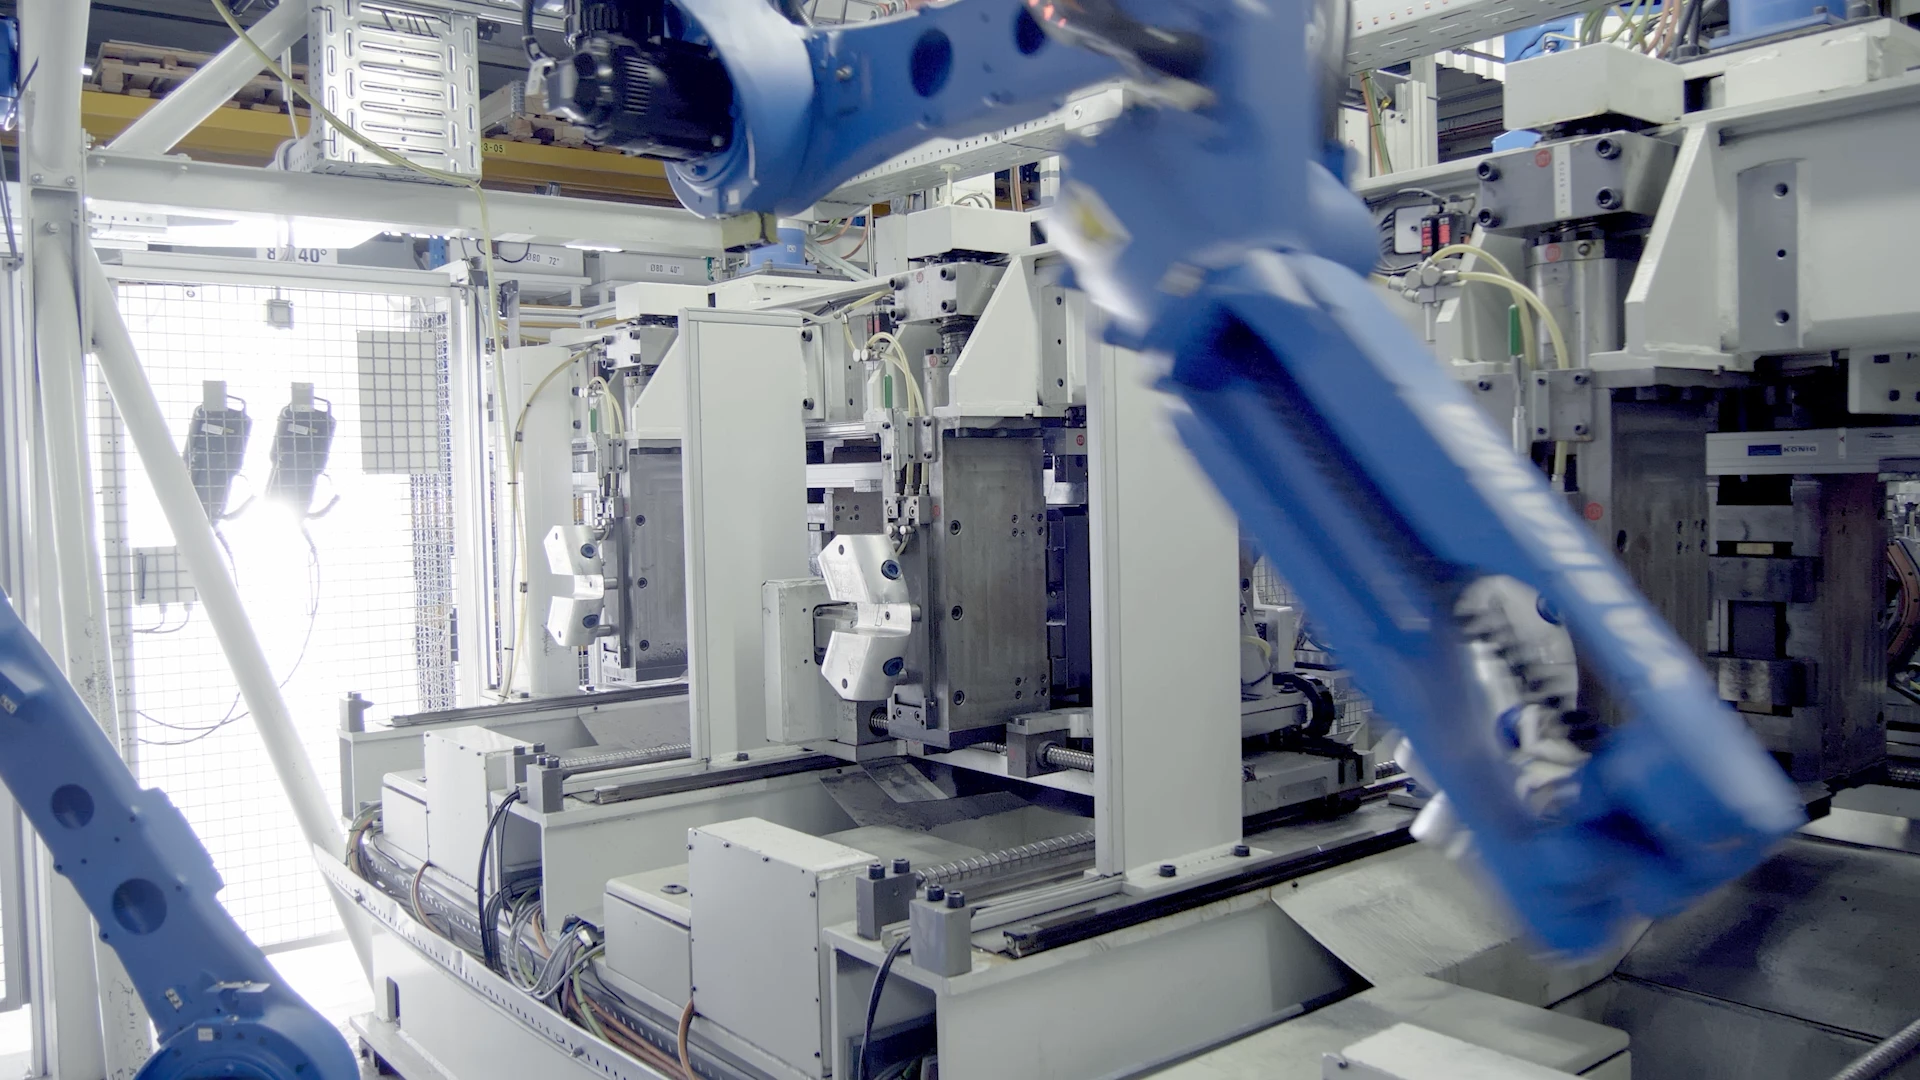 Industrieroboter in einer modernen Produktionslinie, erstellt von Bürobewegt, Experten für visuelles Marketing und Motion Design.